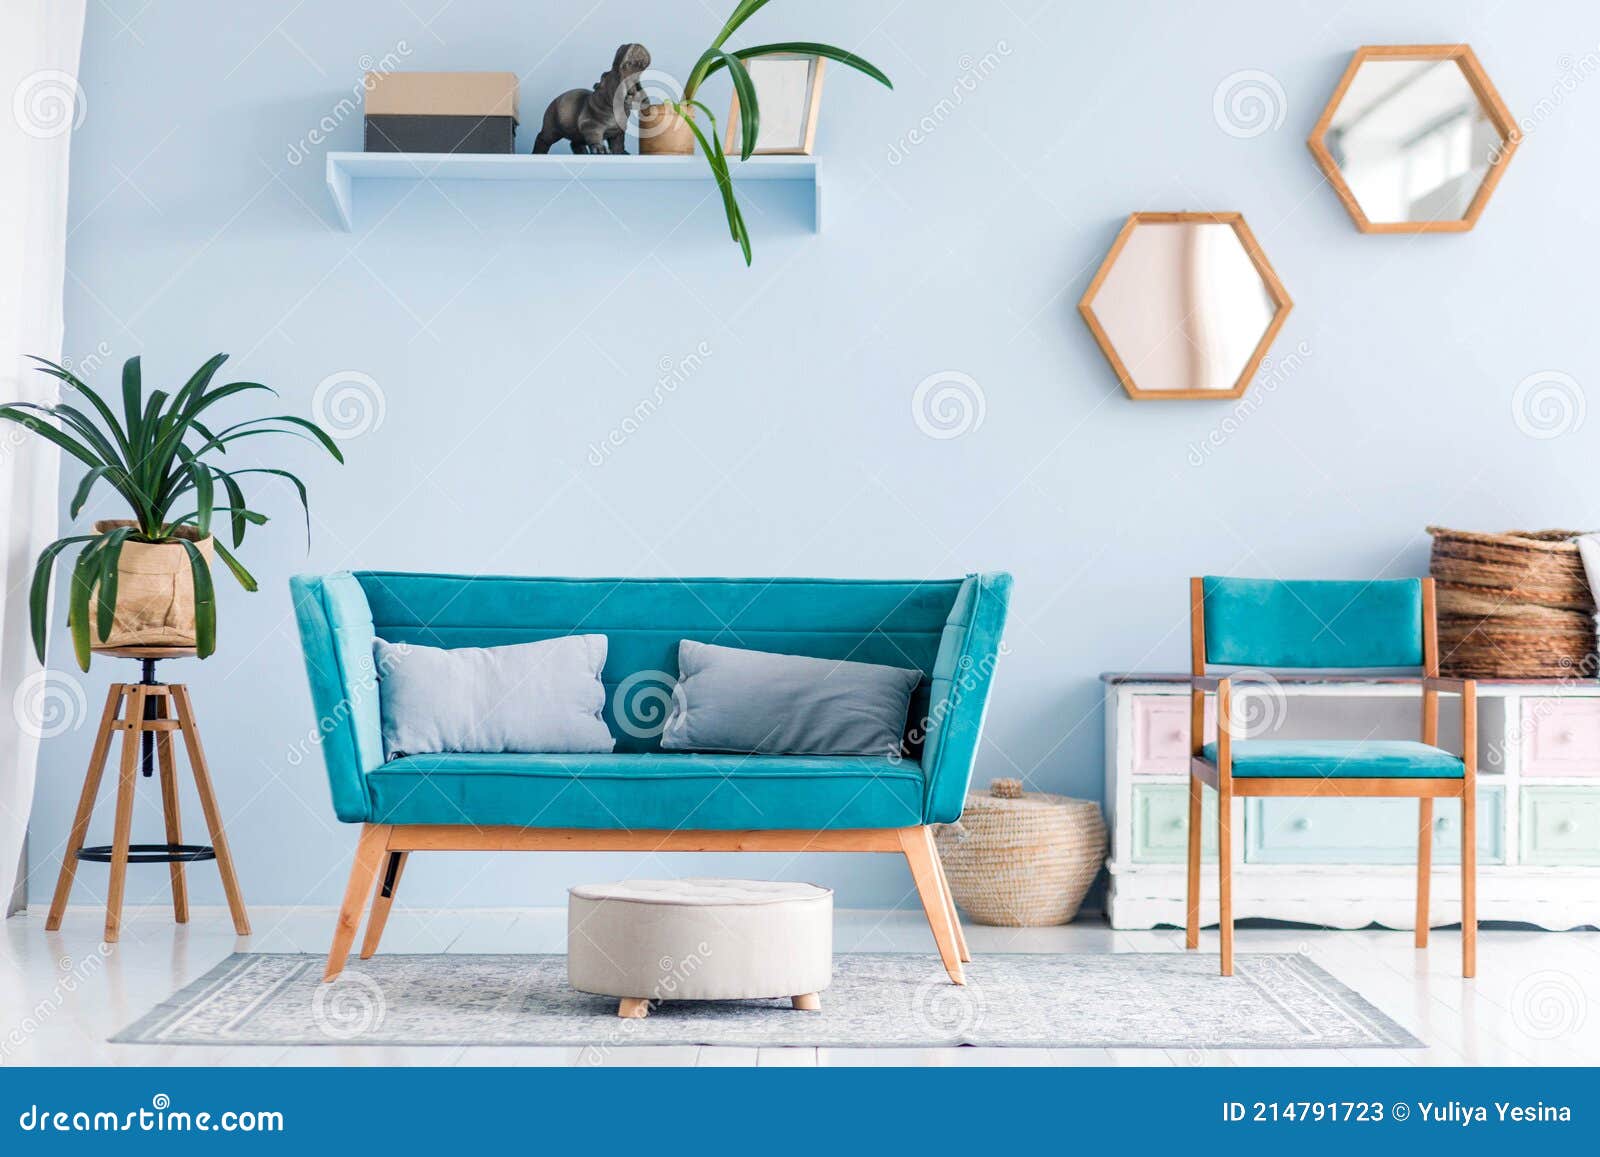 Sala De Estar Con Plantas Muebles De Azul Moderno Y Decoración de archivo - Imagen de hotel, brillante: 214791723